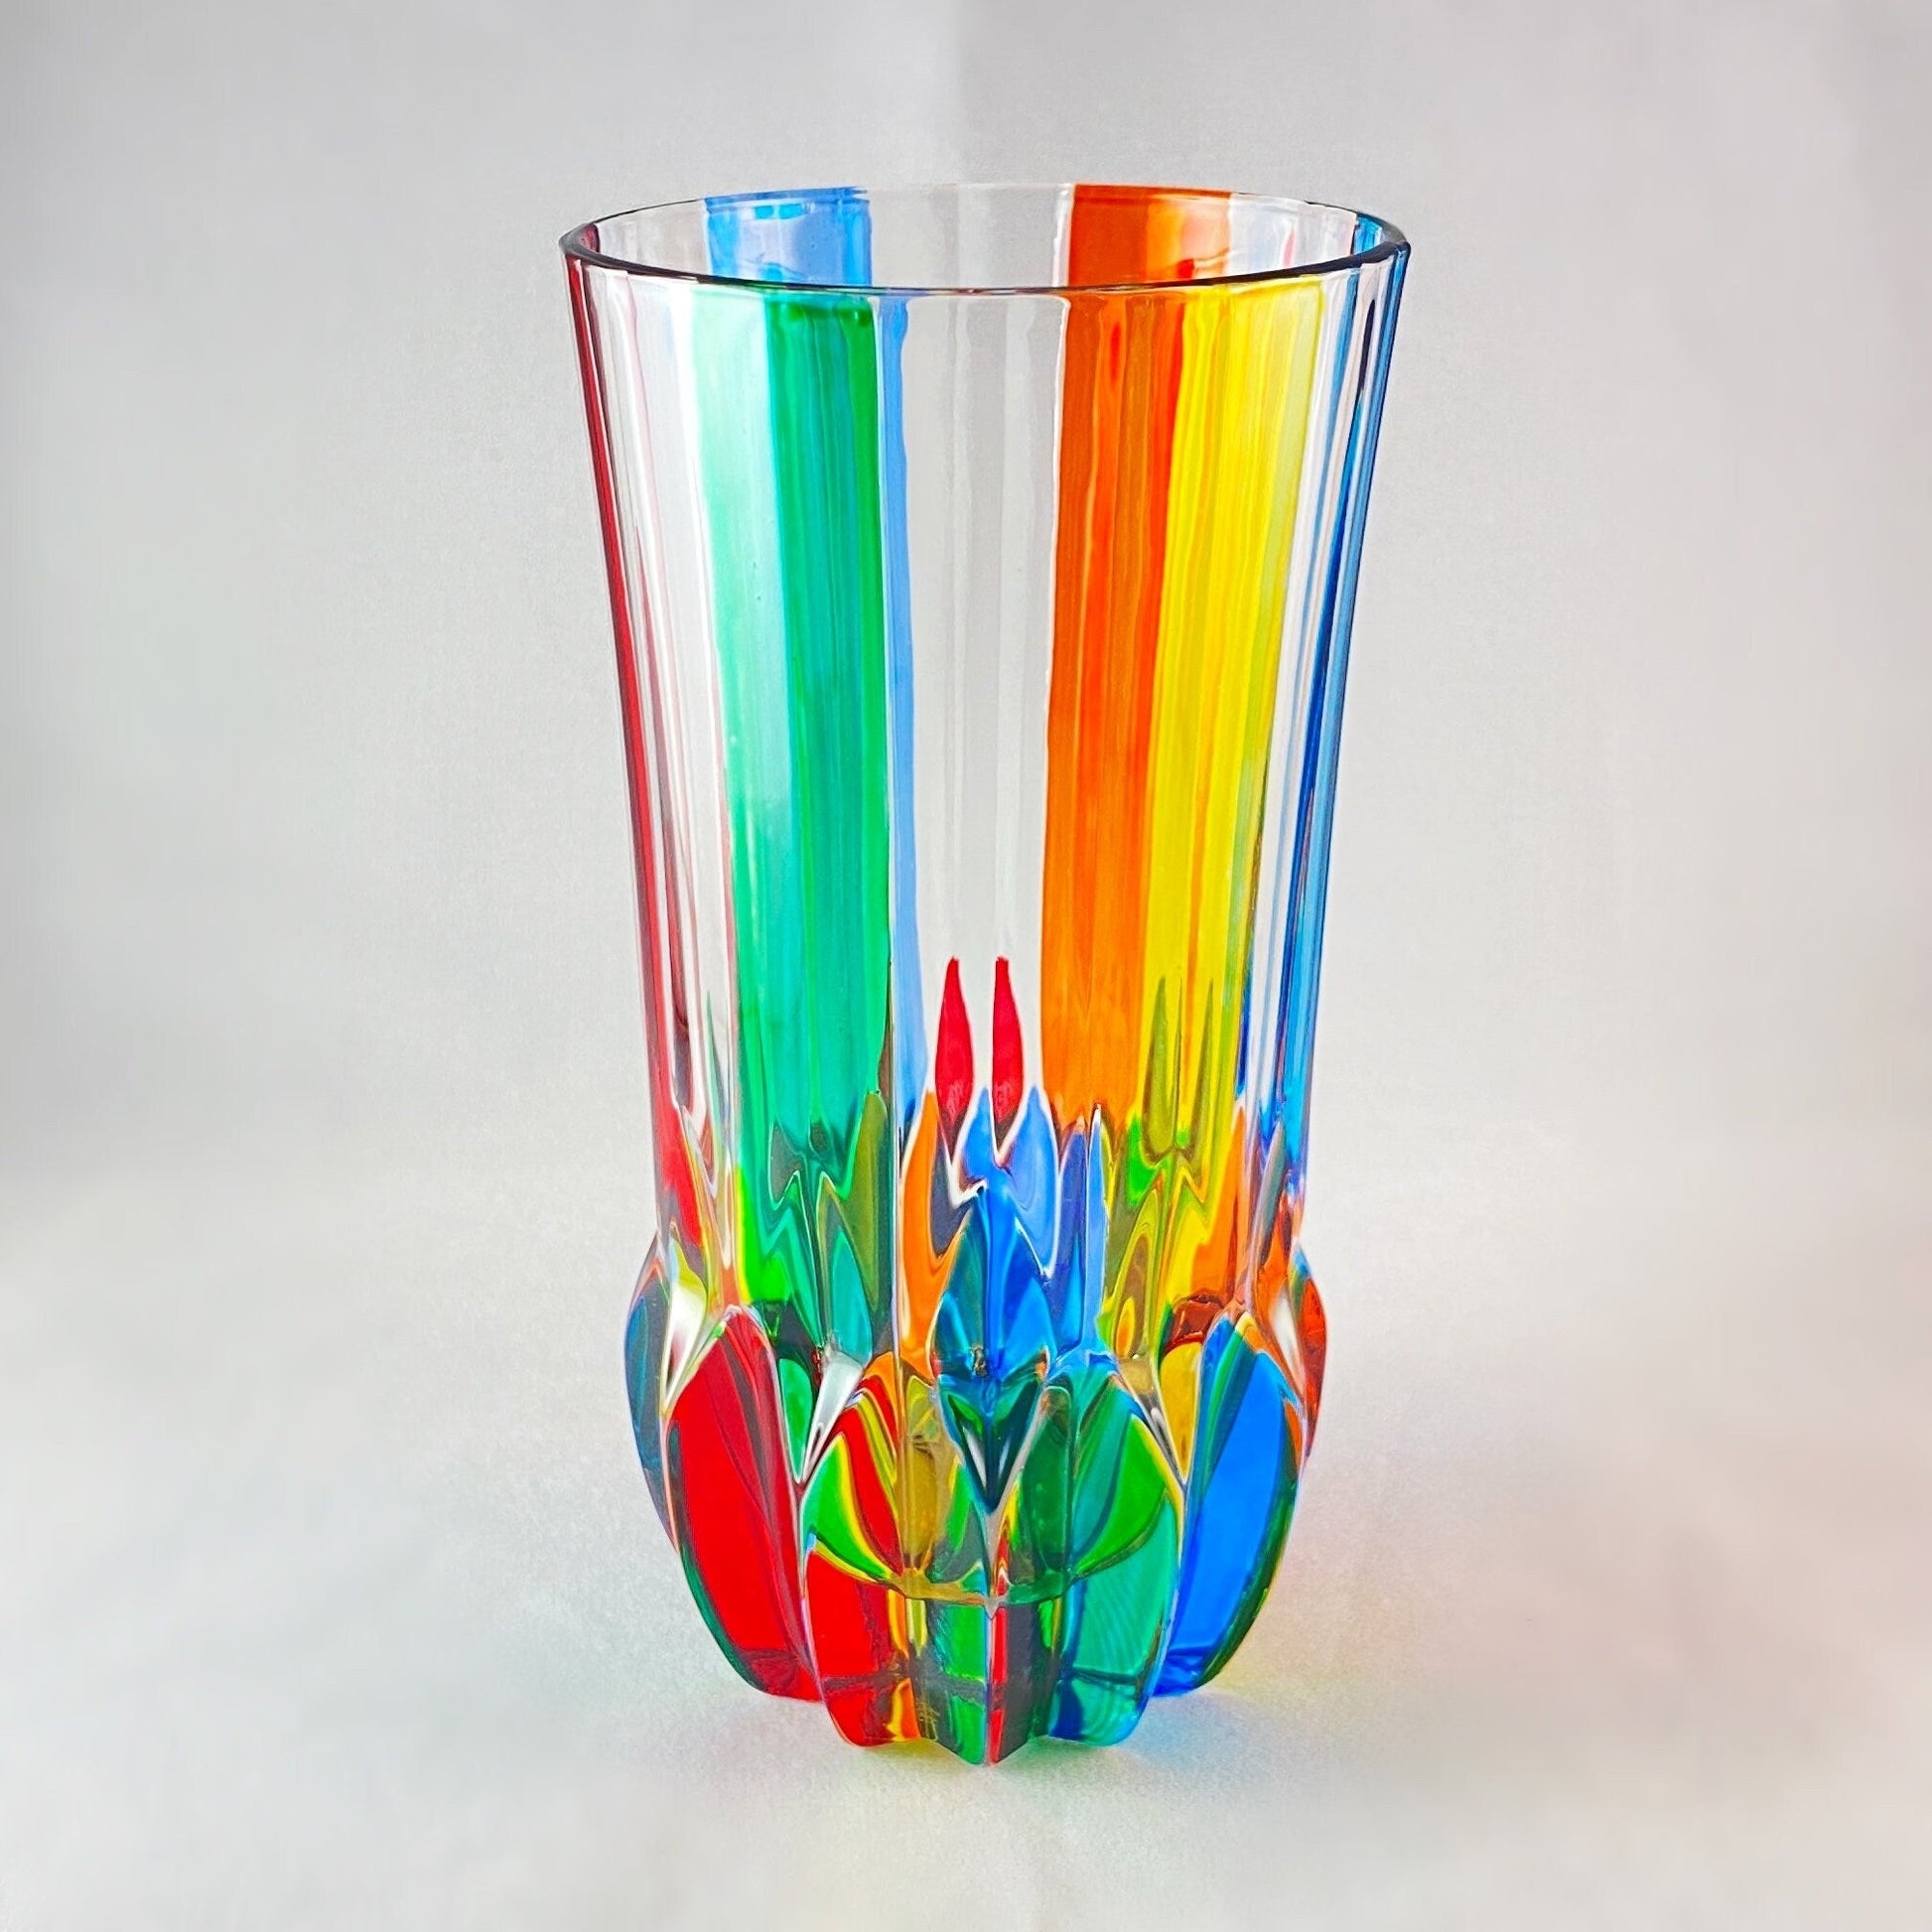 Adagio Highball Venetian Glass - Handmade in Italy, Colorful Murano Glass